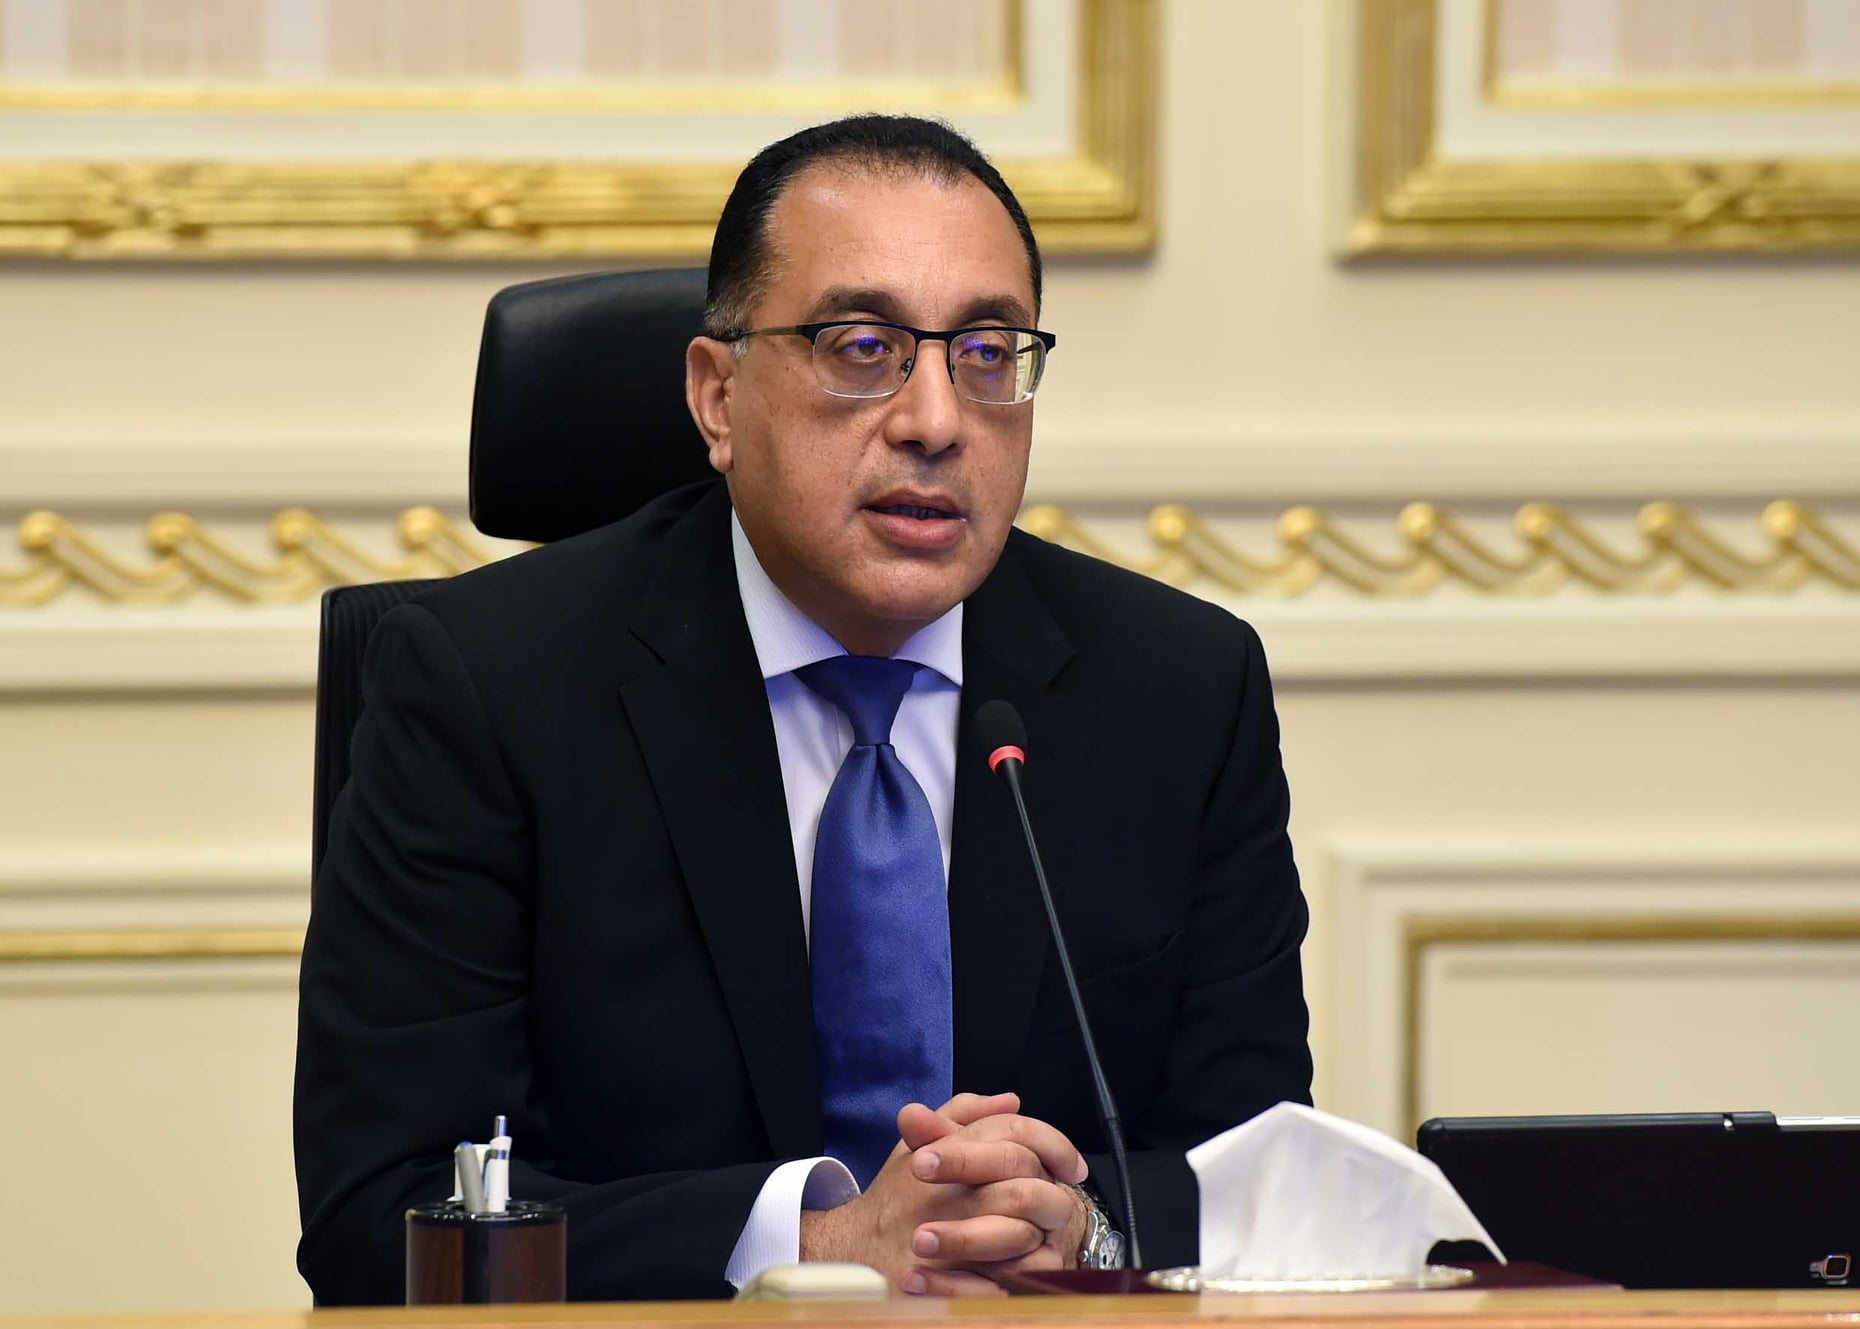 رئيس الوزراء يستعرض أداء موازنة الهيئة المصرية العامة للبترول للعام المالي الماضي